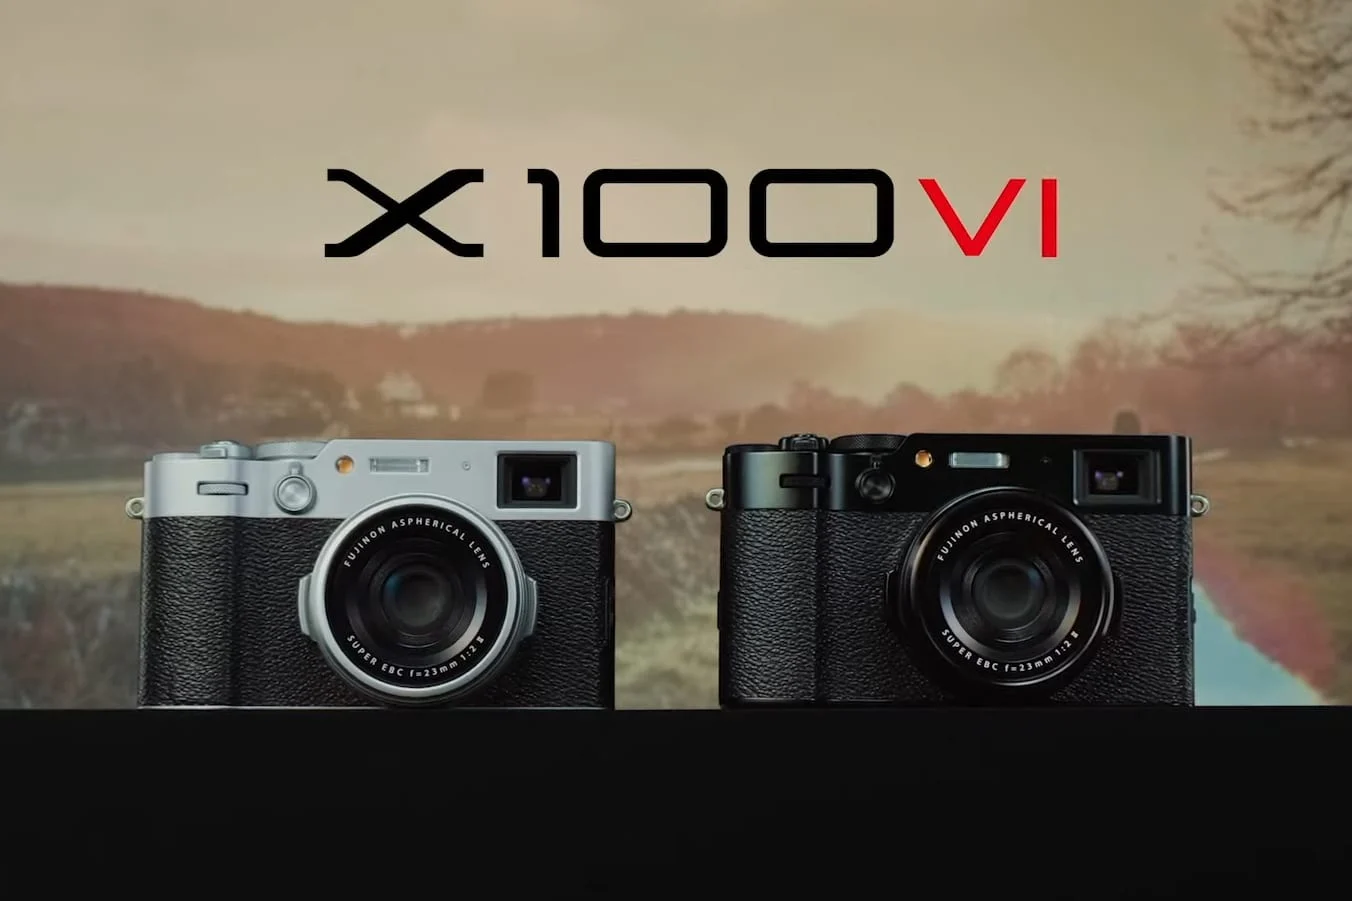 Fujifilm X-100vi